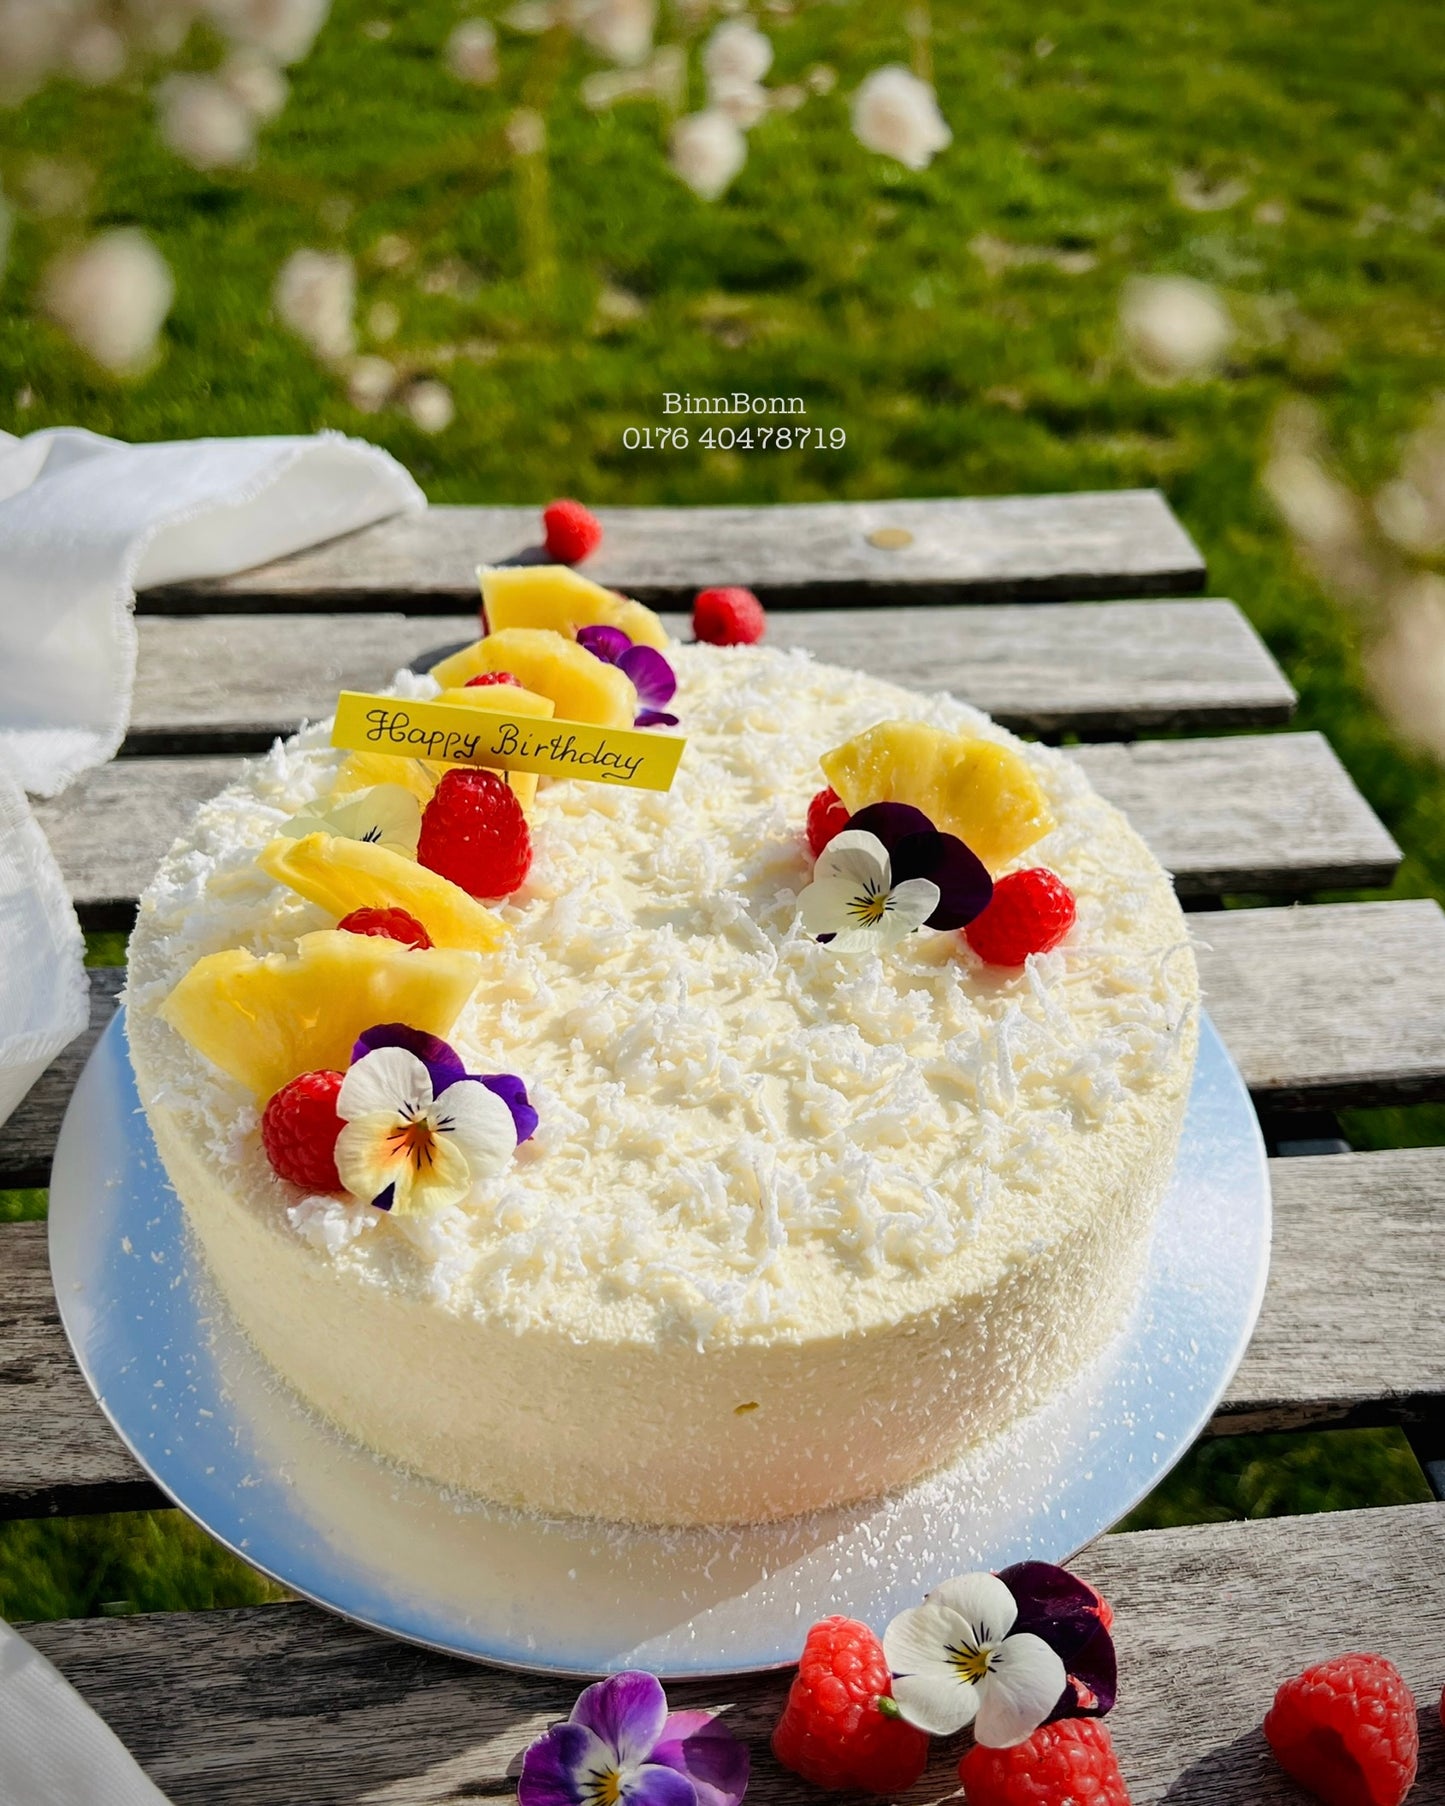 47. Torte "Tropical Touch" mit frischem Kokosfleisch und Ananas 20 cm